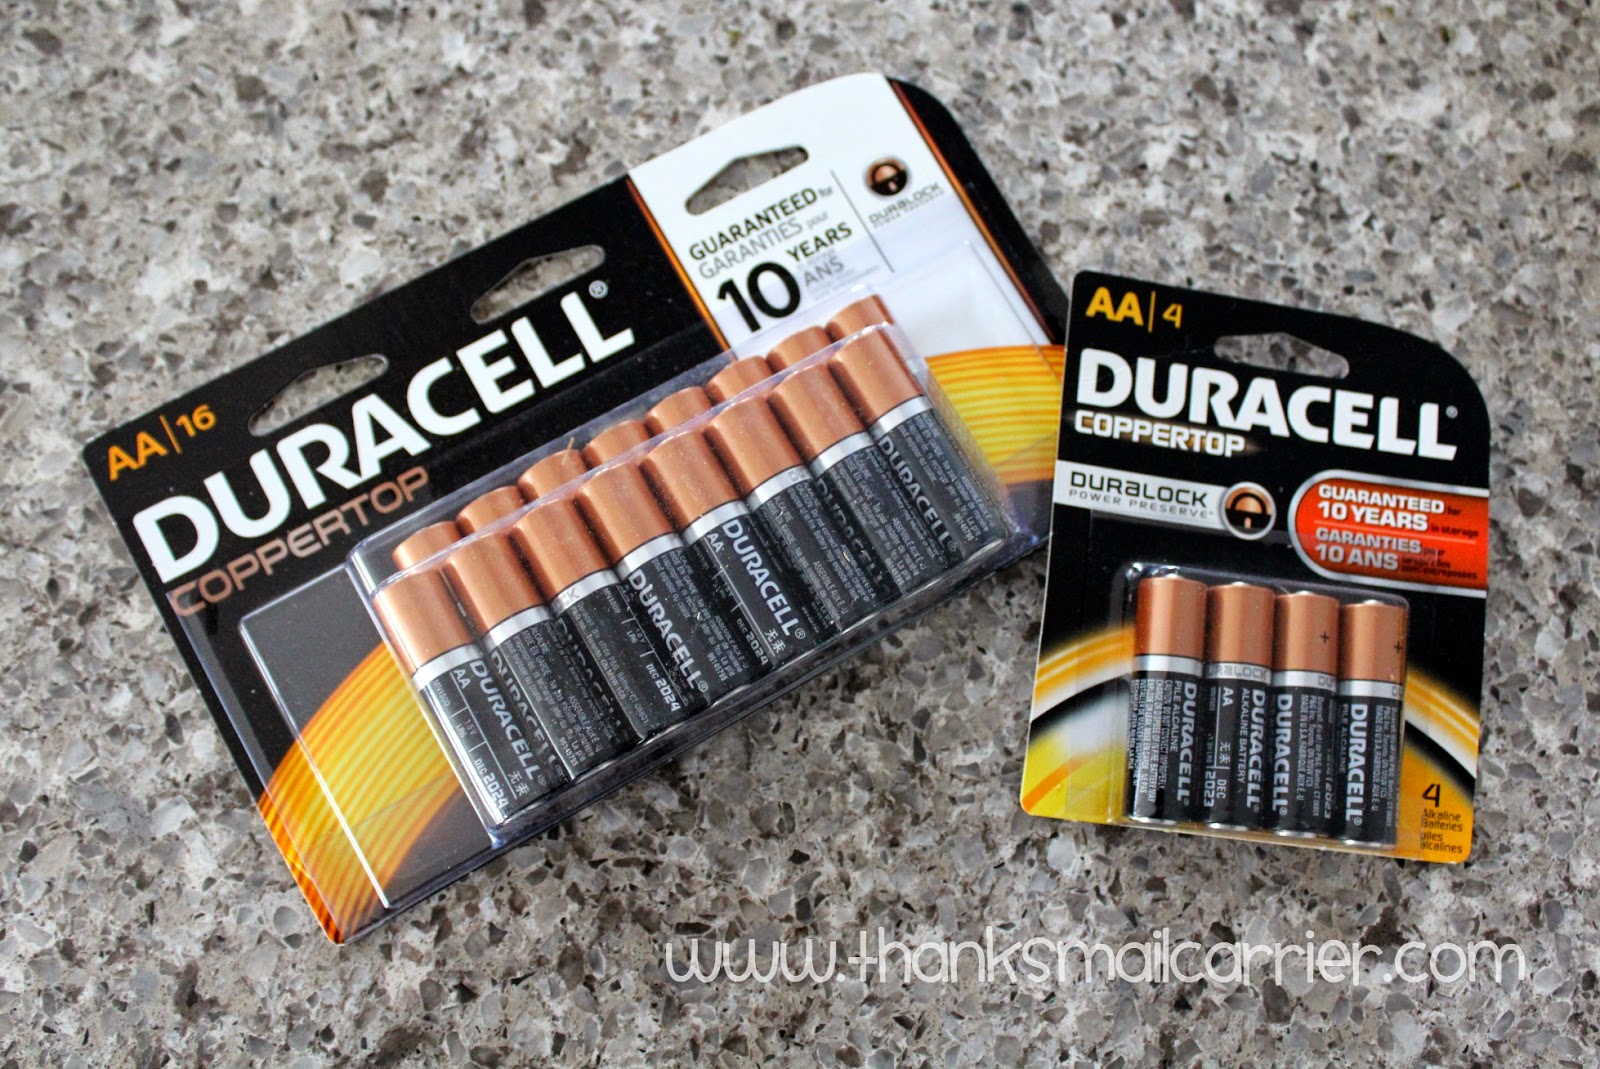 Duracell batteries